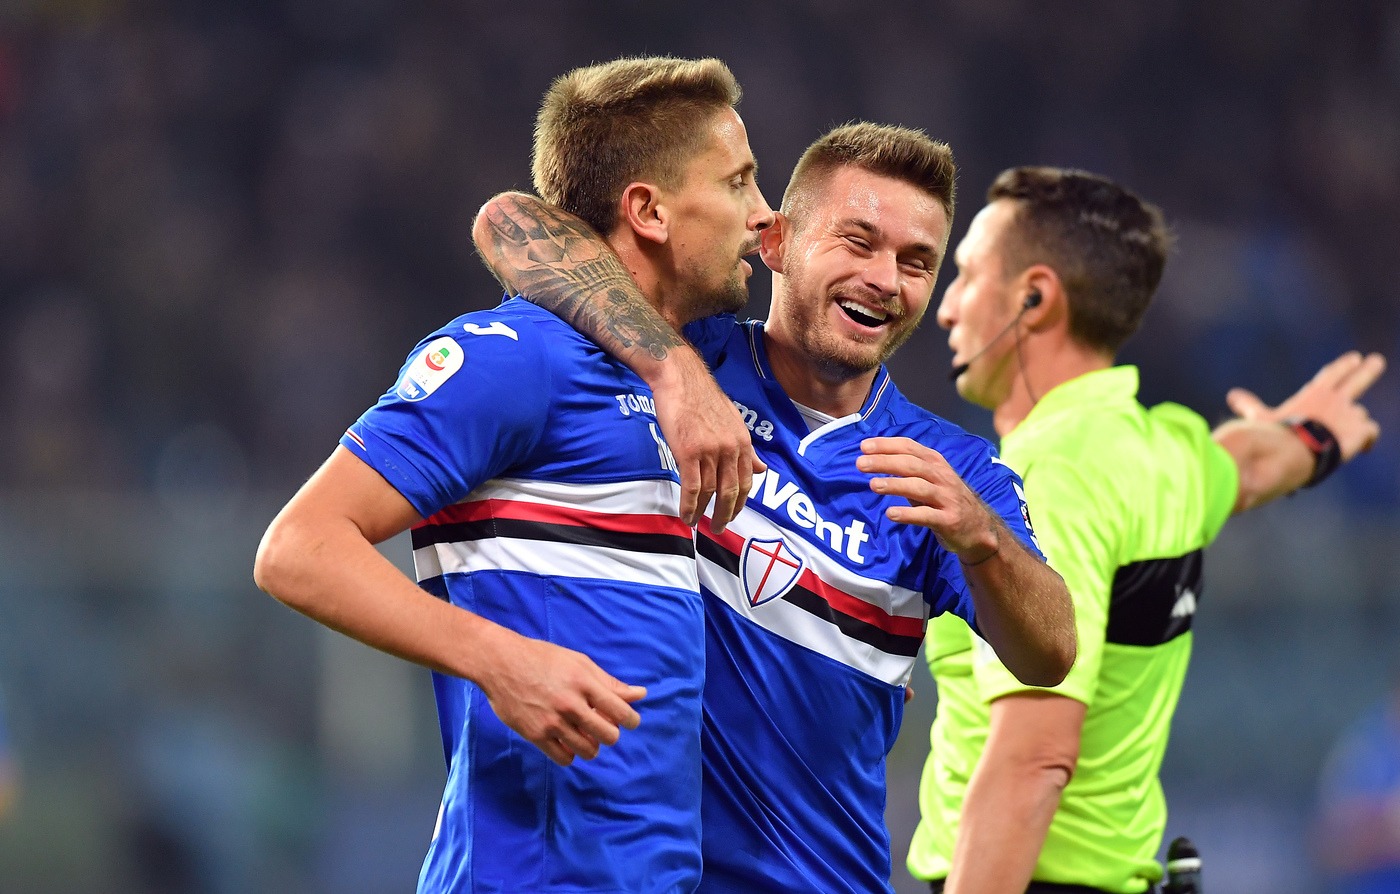 Serie A, Sampdoria-Chievo Verona mercoledì 26 dicembre: analisi e pronostico della 18ma giornata del campionato italiano